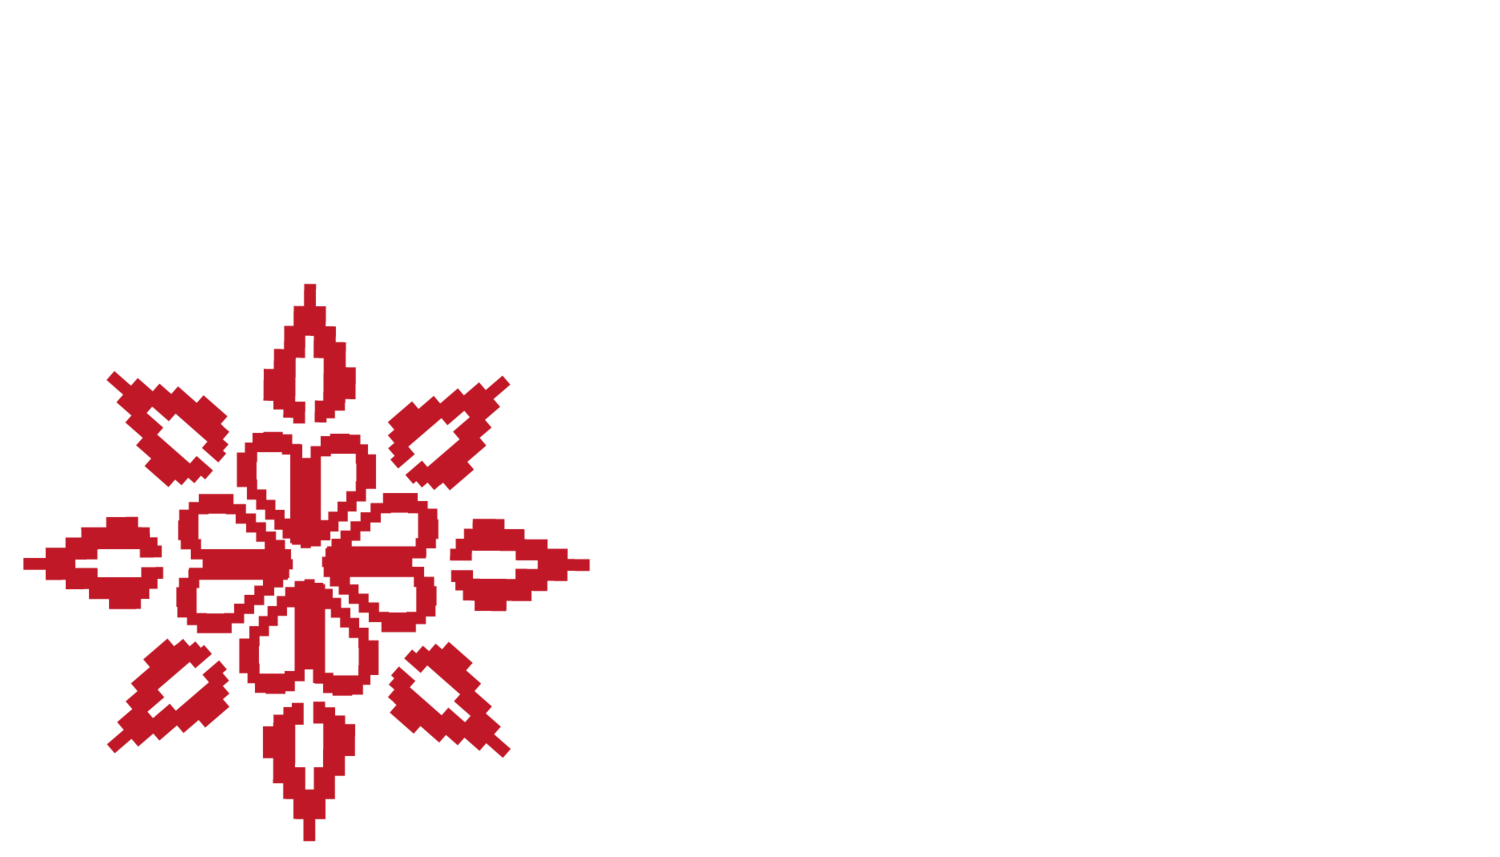 Palästina Spricht